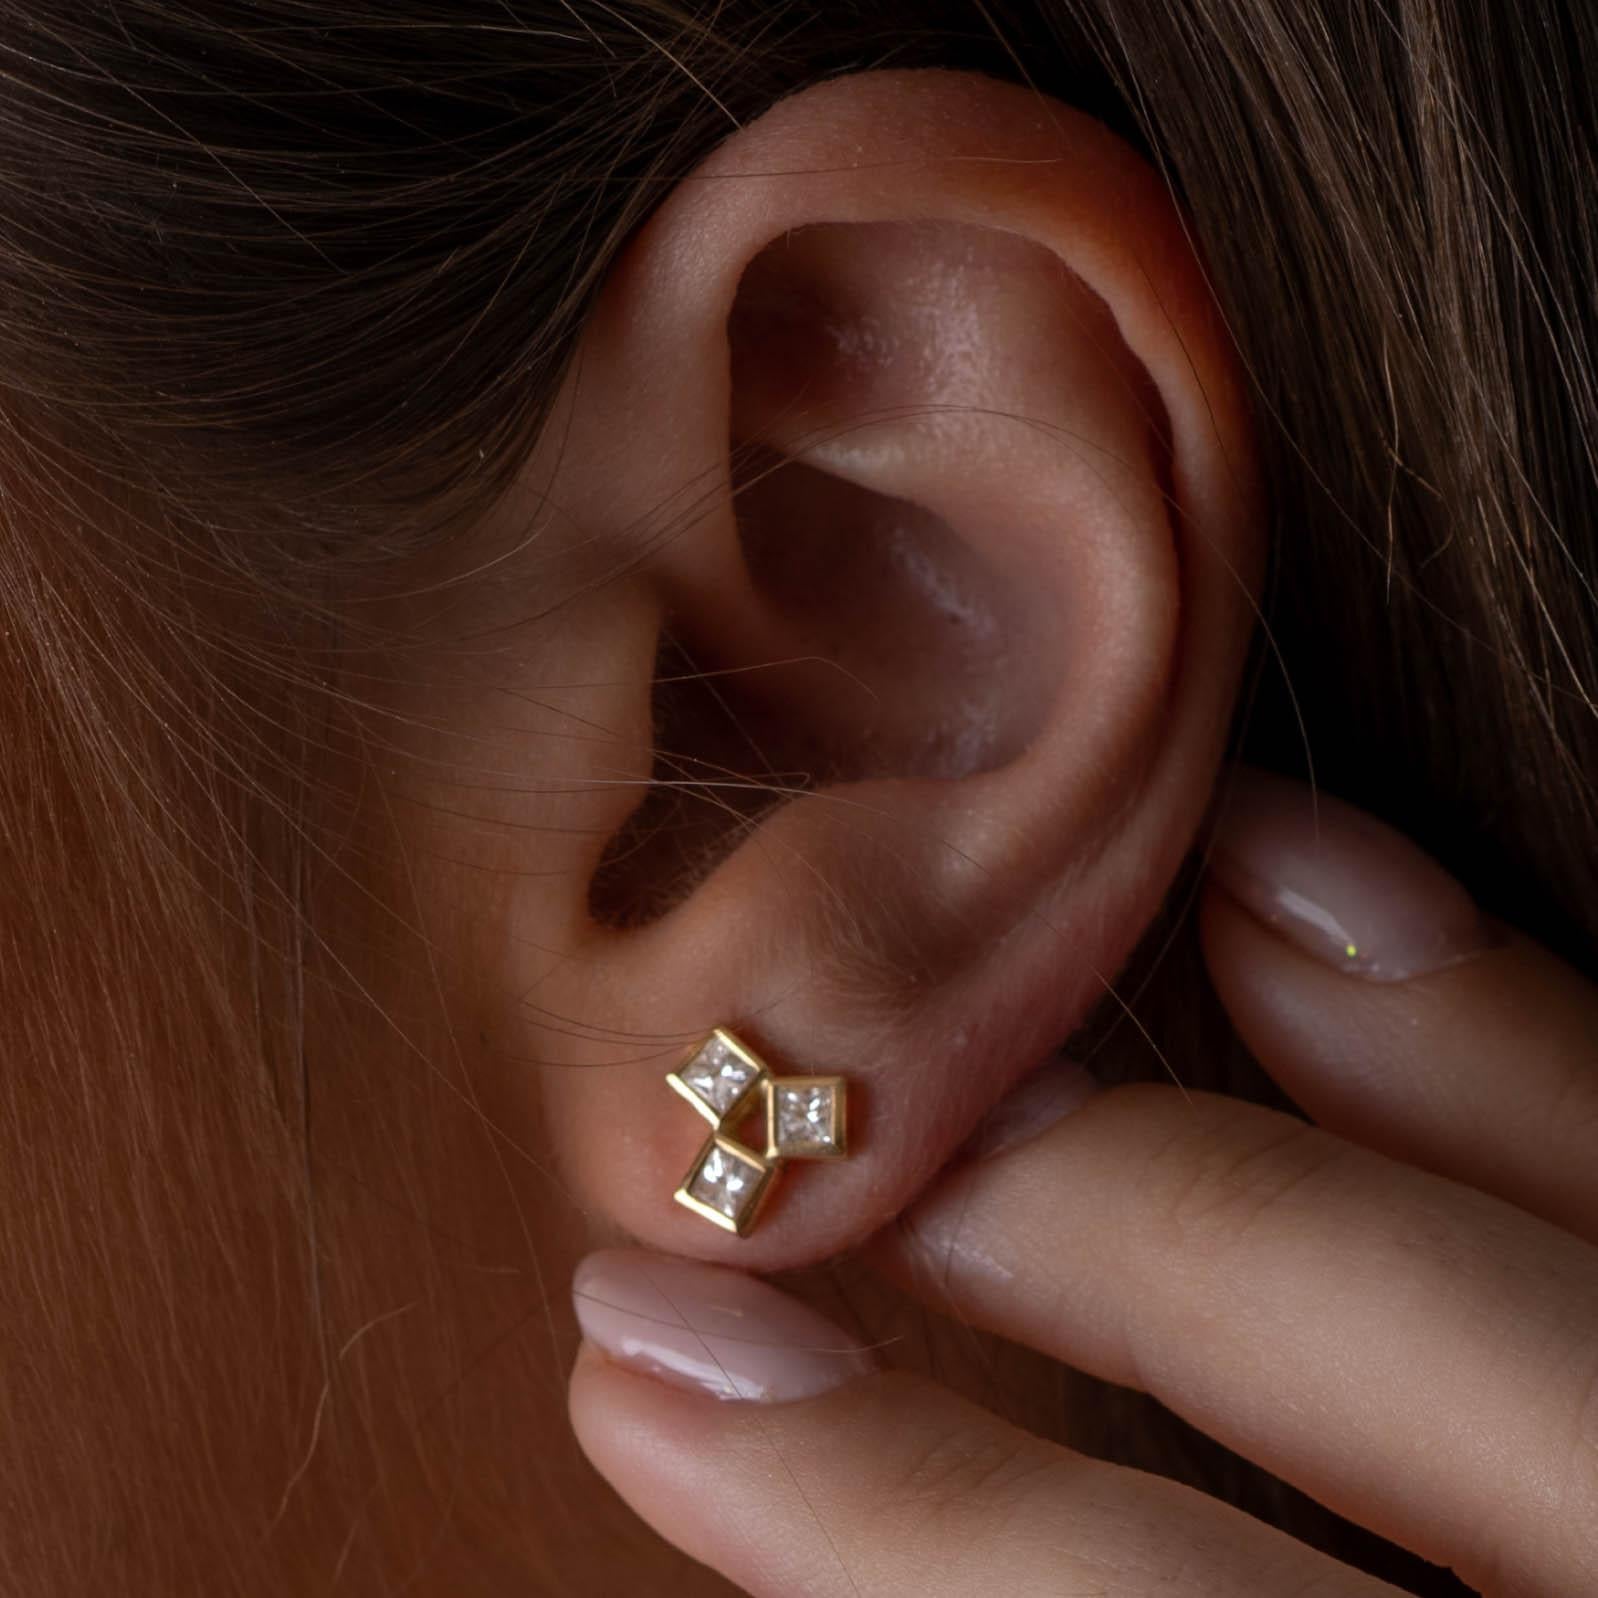 boucles d'oreilles en or 18 carats avec des diamants.Boucles d'oreilles en grappe de diamants 

Boucles d'oreilles romantiques et uniques en diamants géométriques. Conçu comme une grappe de 3 carrés, serti d'un magnifique diamant blanc. 
Idéal pour